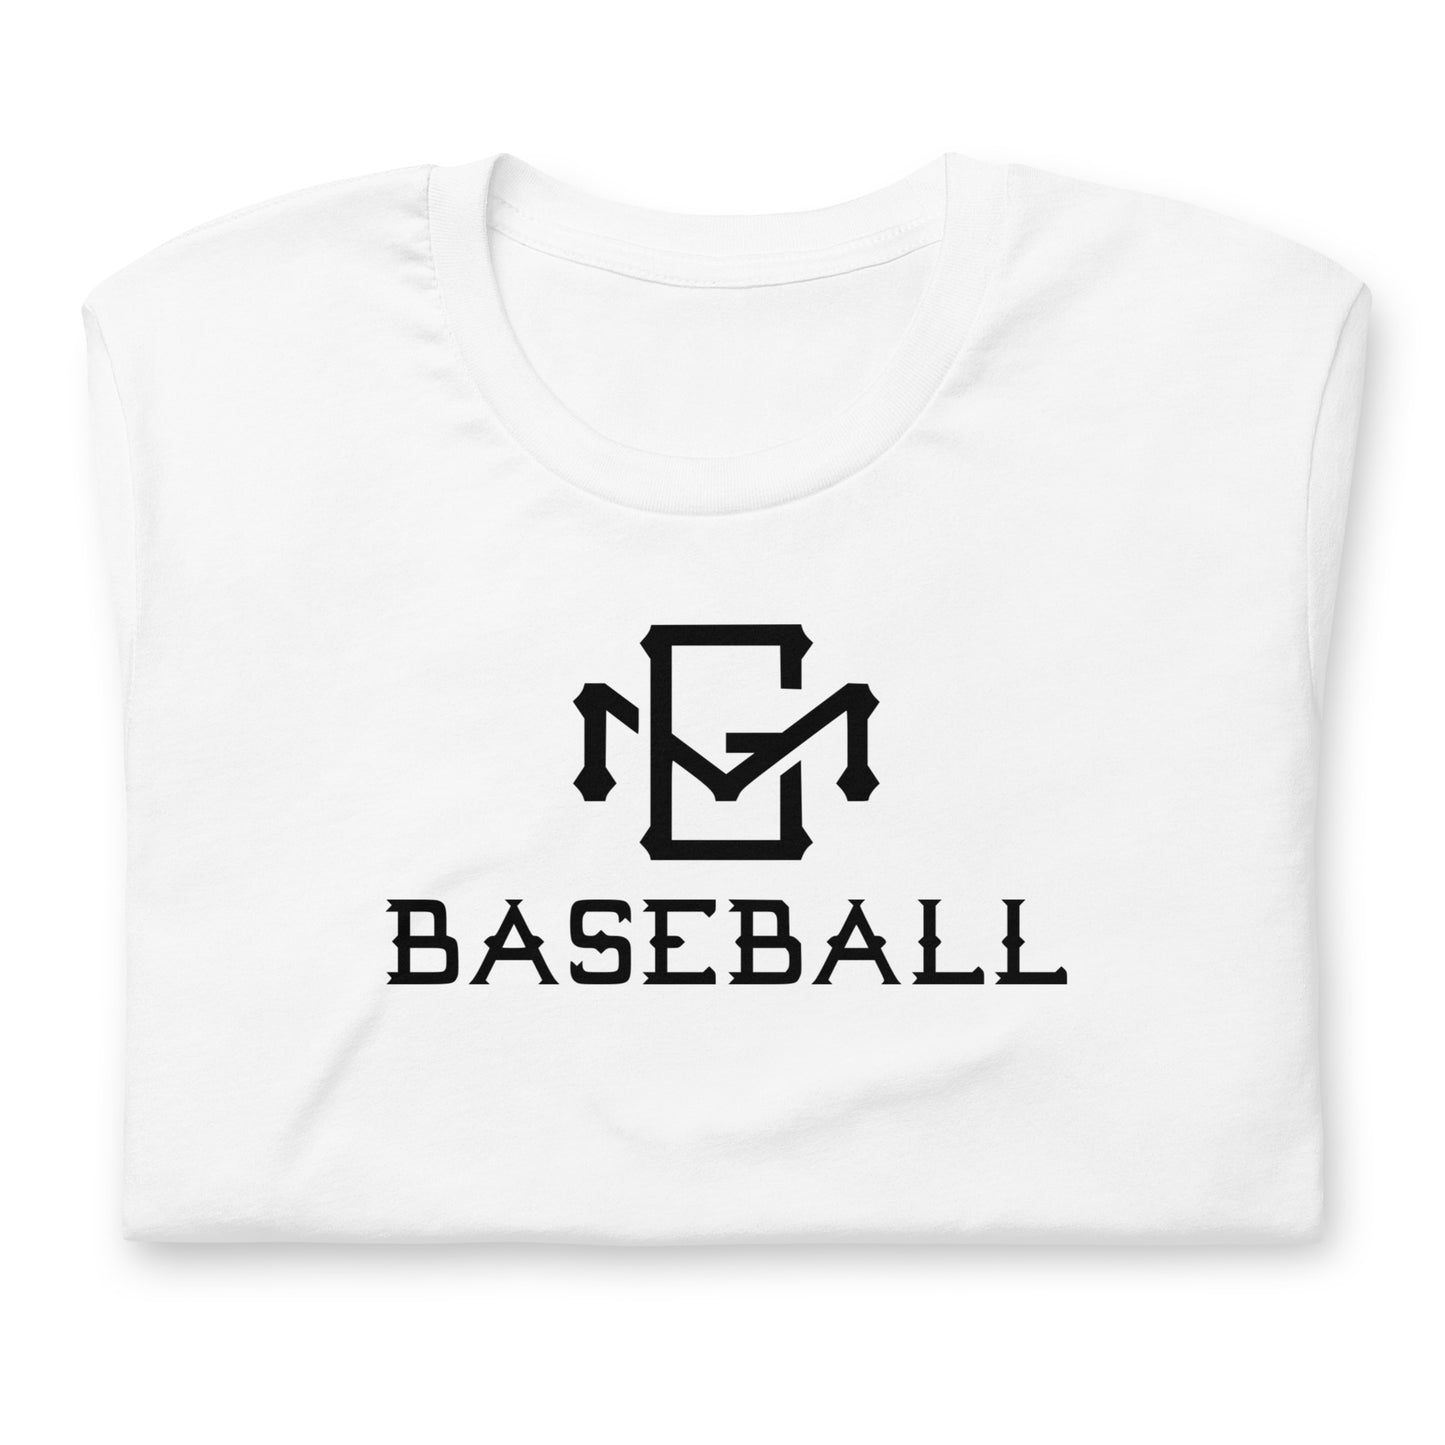 Gwinn Modeltowners Baseball T-shirt